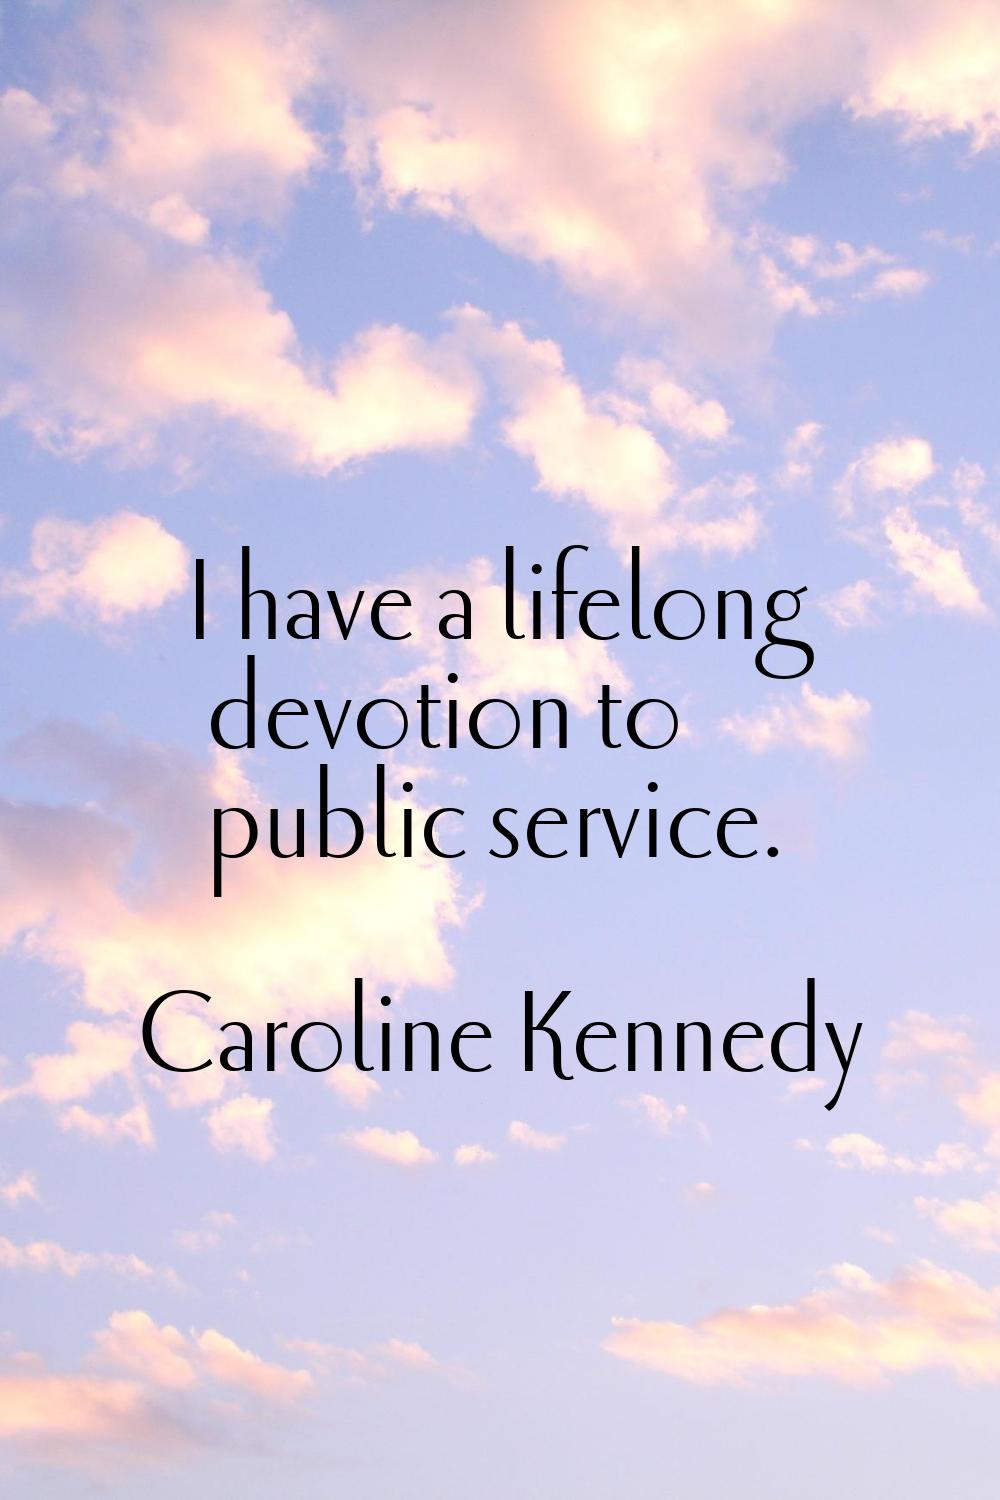 I have a lifelong devotion to public service.